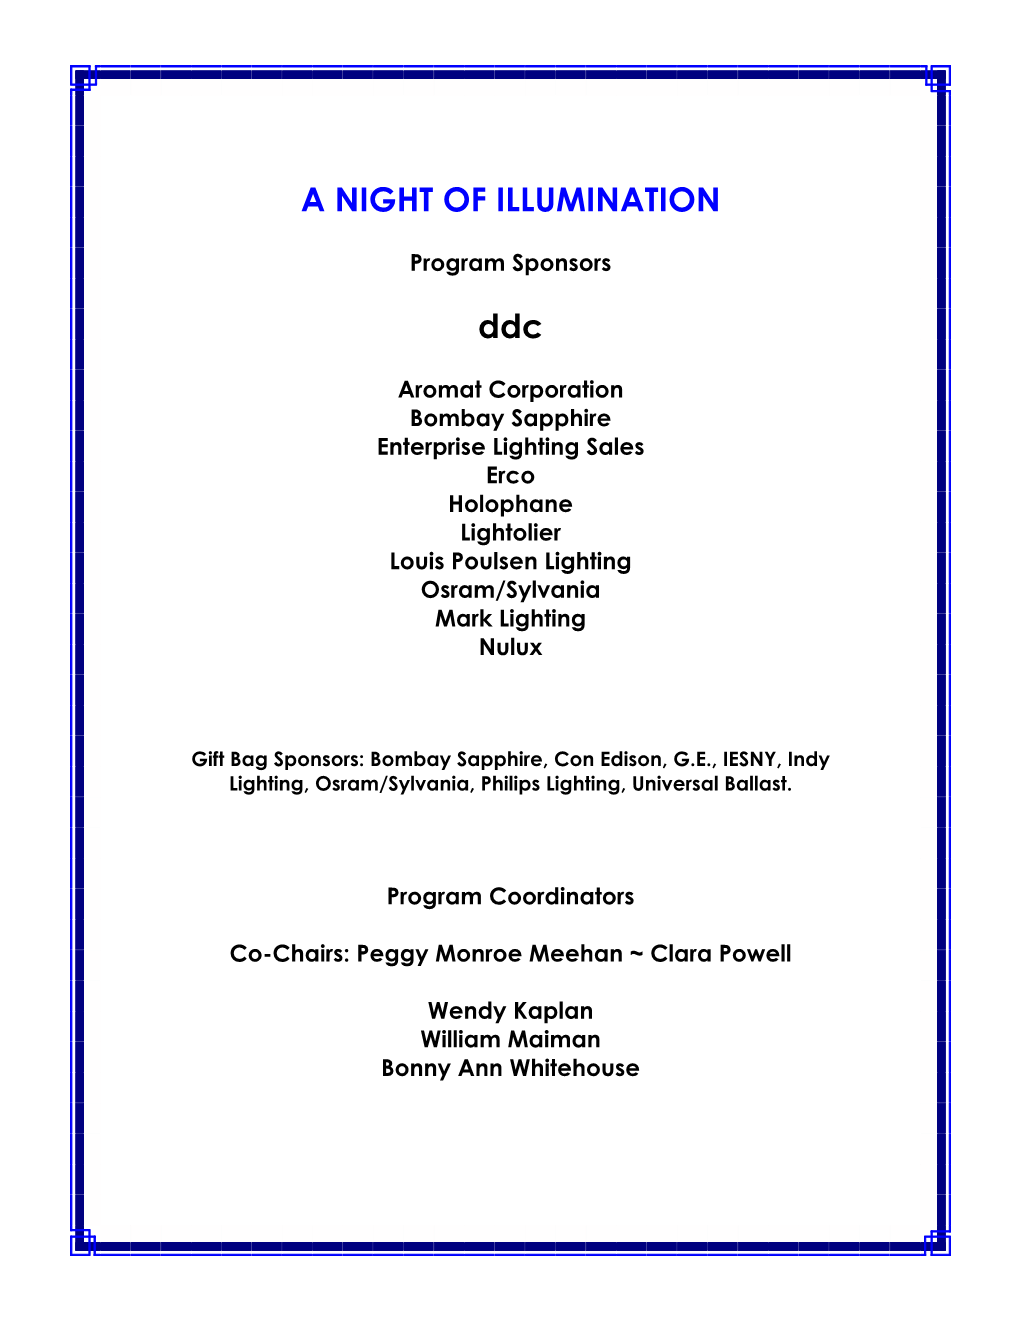 A Night of Illumination